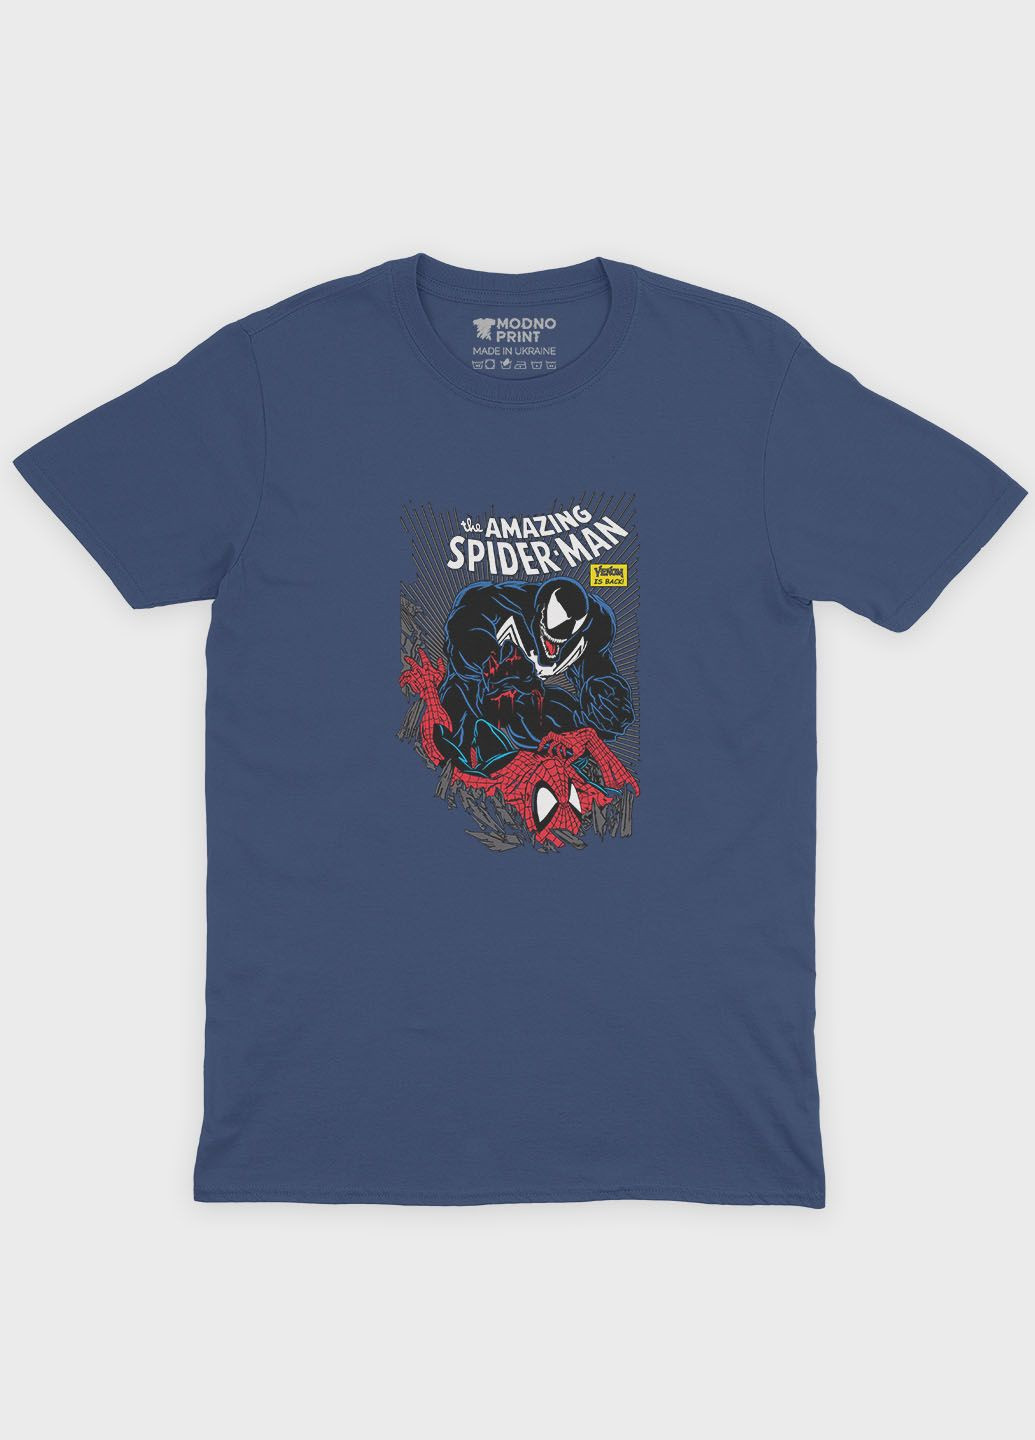 Темно-синяя демисезонная футболка для девочки с принтом супергероя - человек-паук (ts001-1-nav-006-014-052-g) Modno